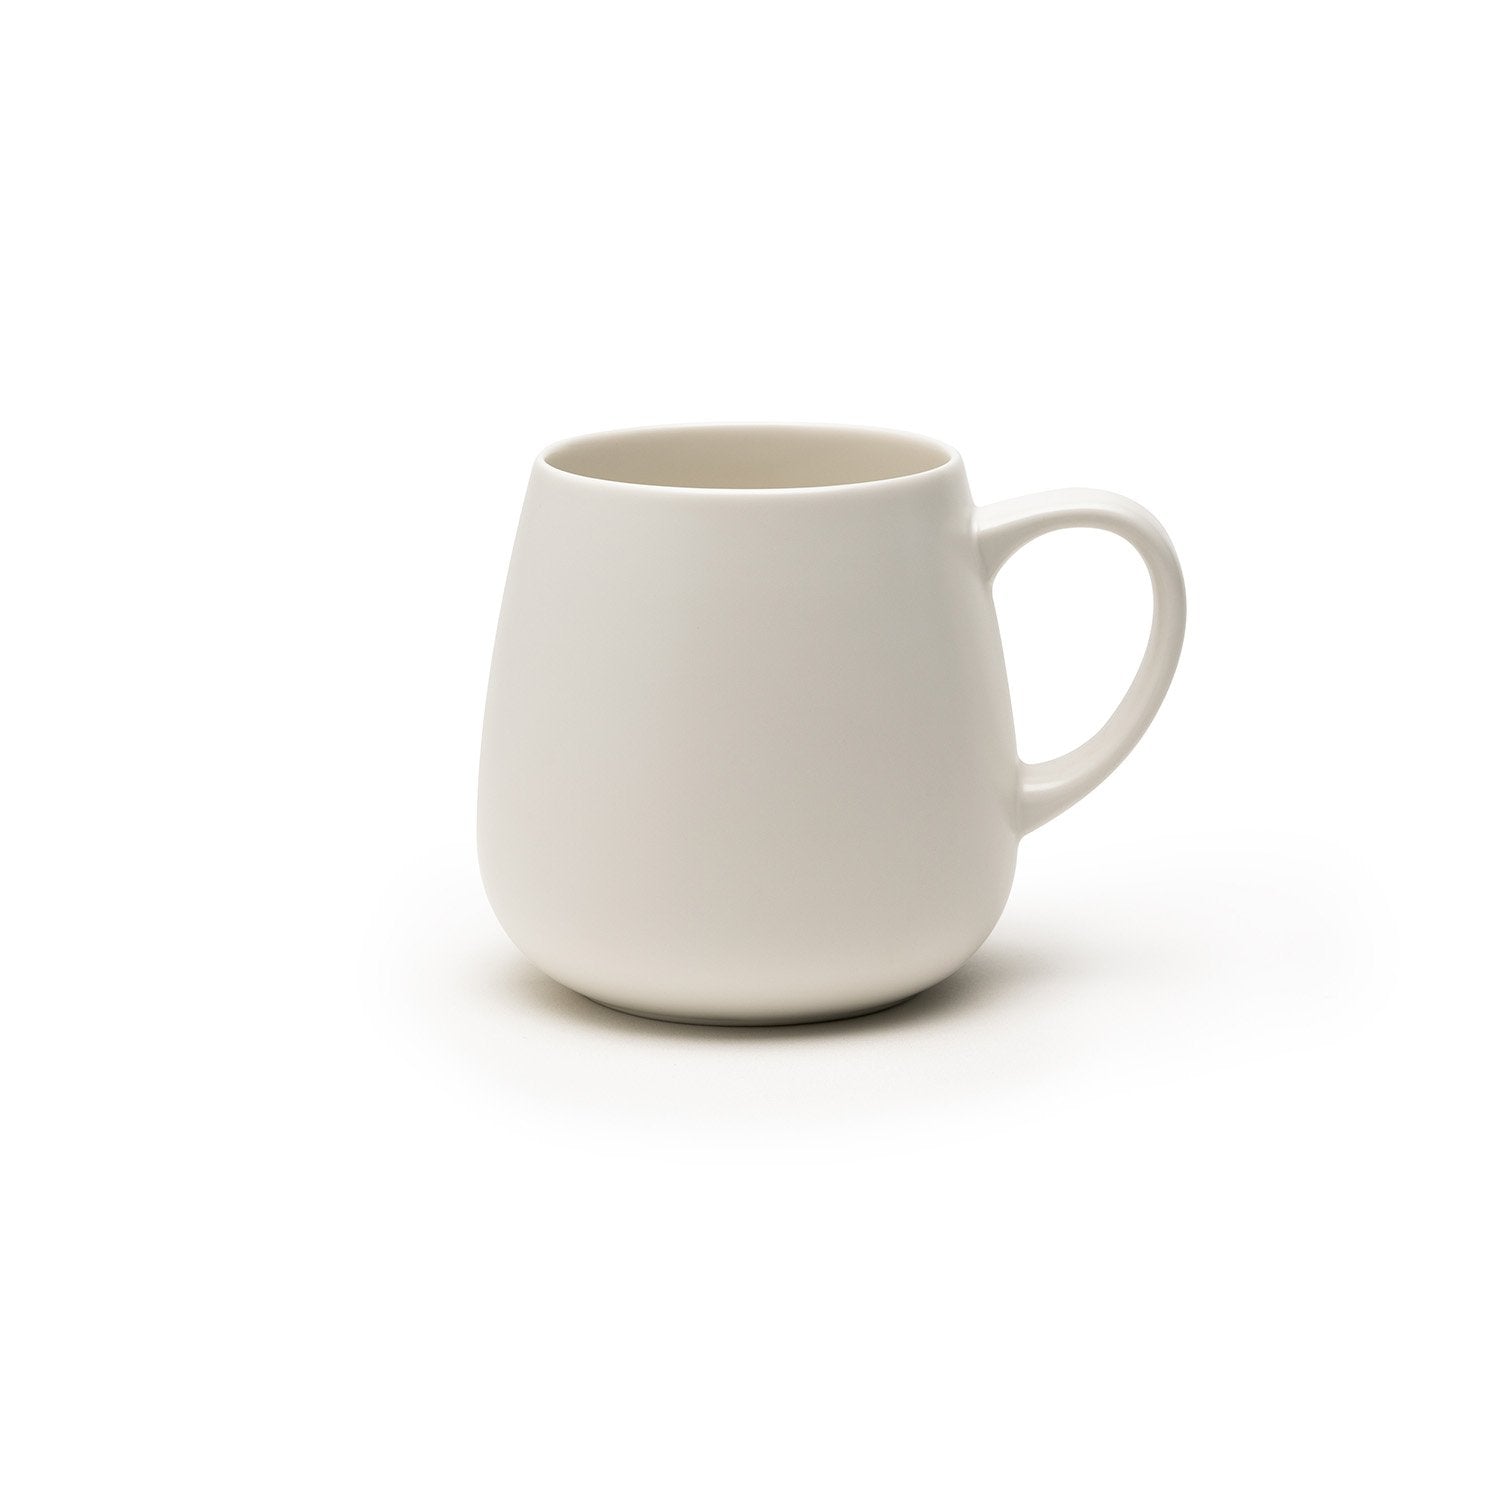 Large white mug